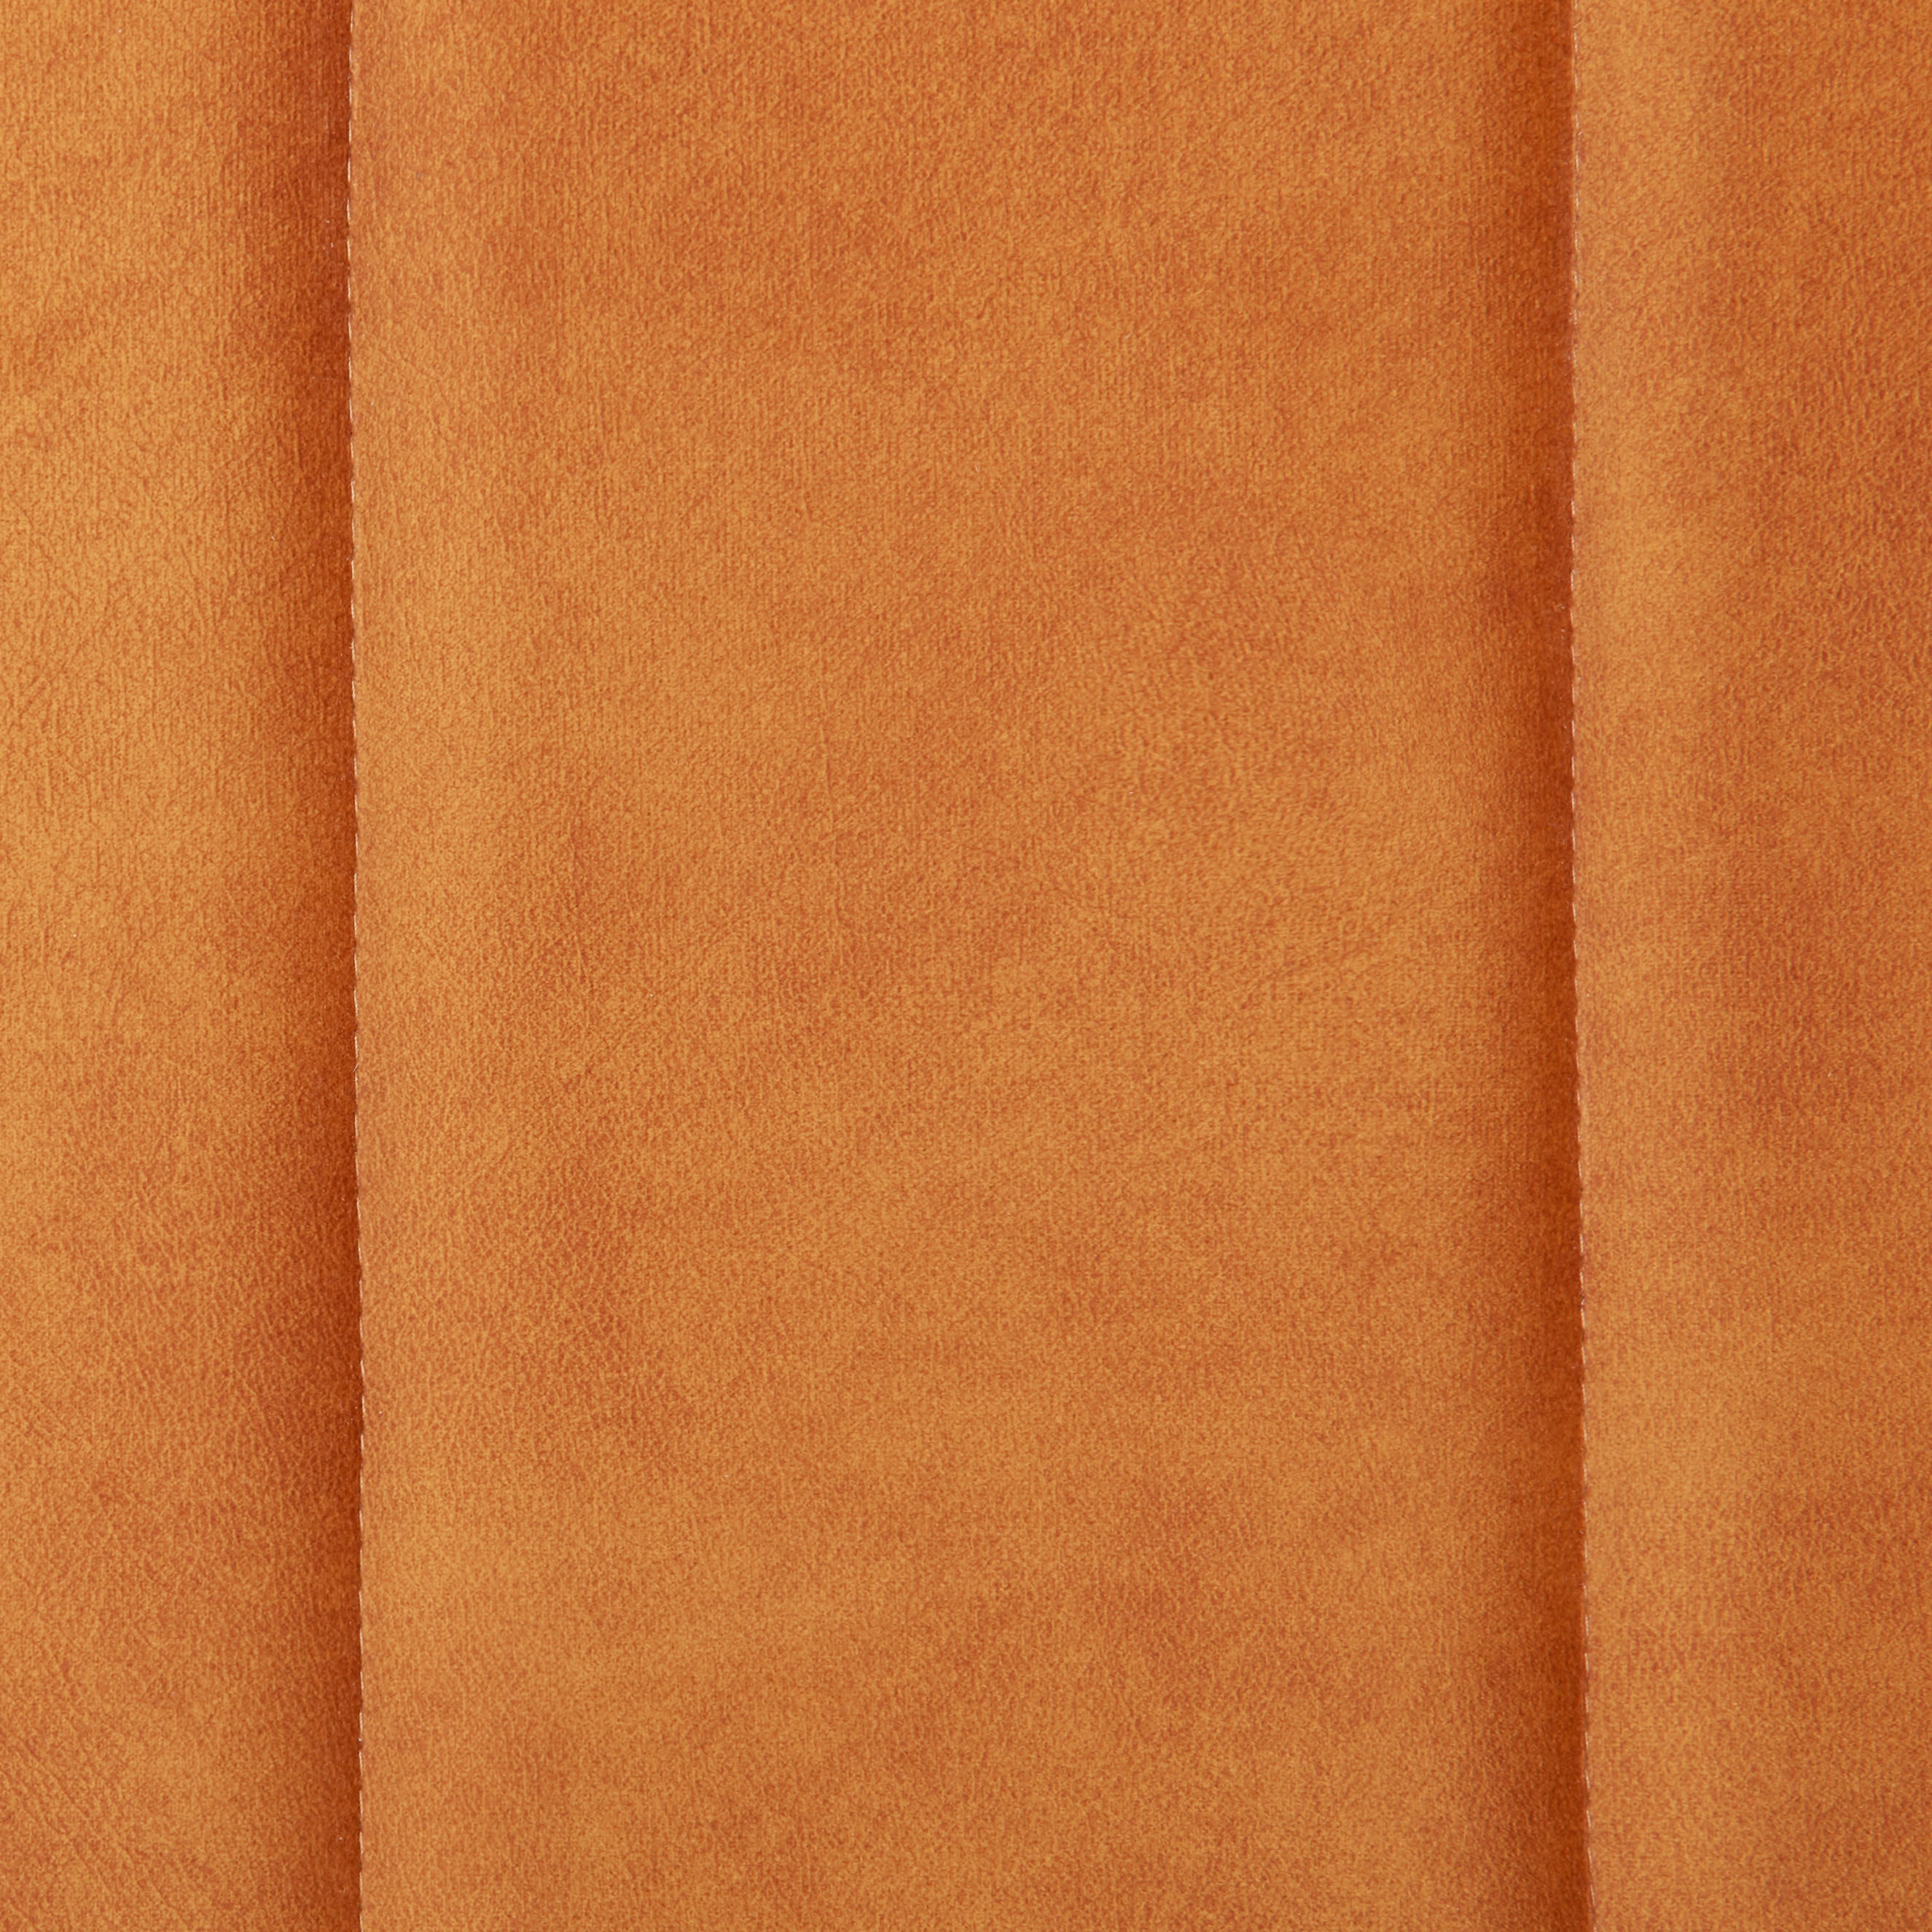 ROZKLADACIA POHOVKA, textil, hrdzavá - čierna/hrdzavá, Konventionell, textil/plast (194/78-87/92cm) - Xora